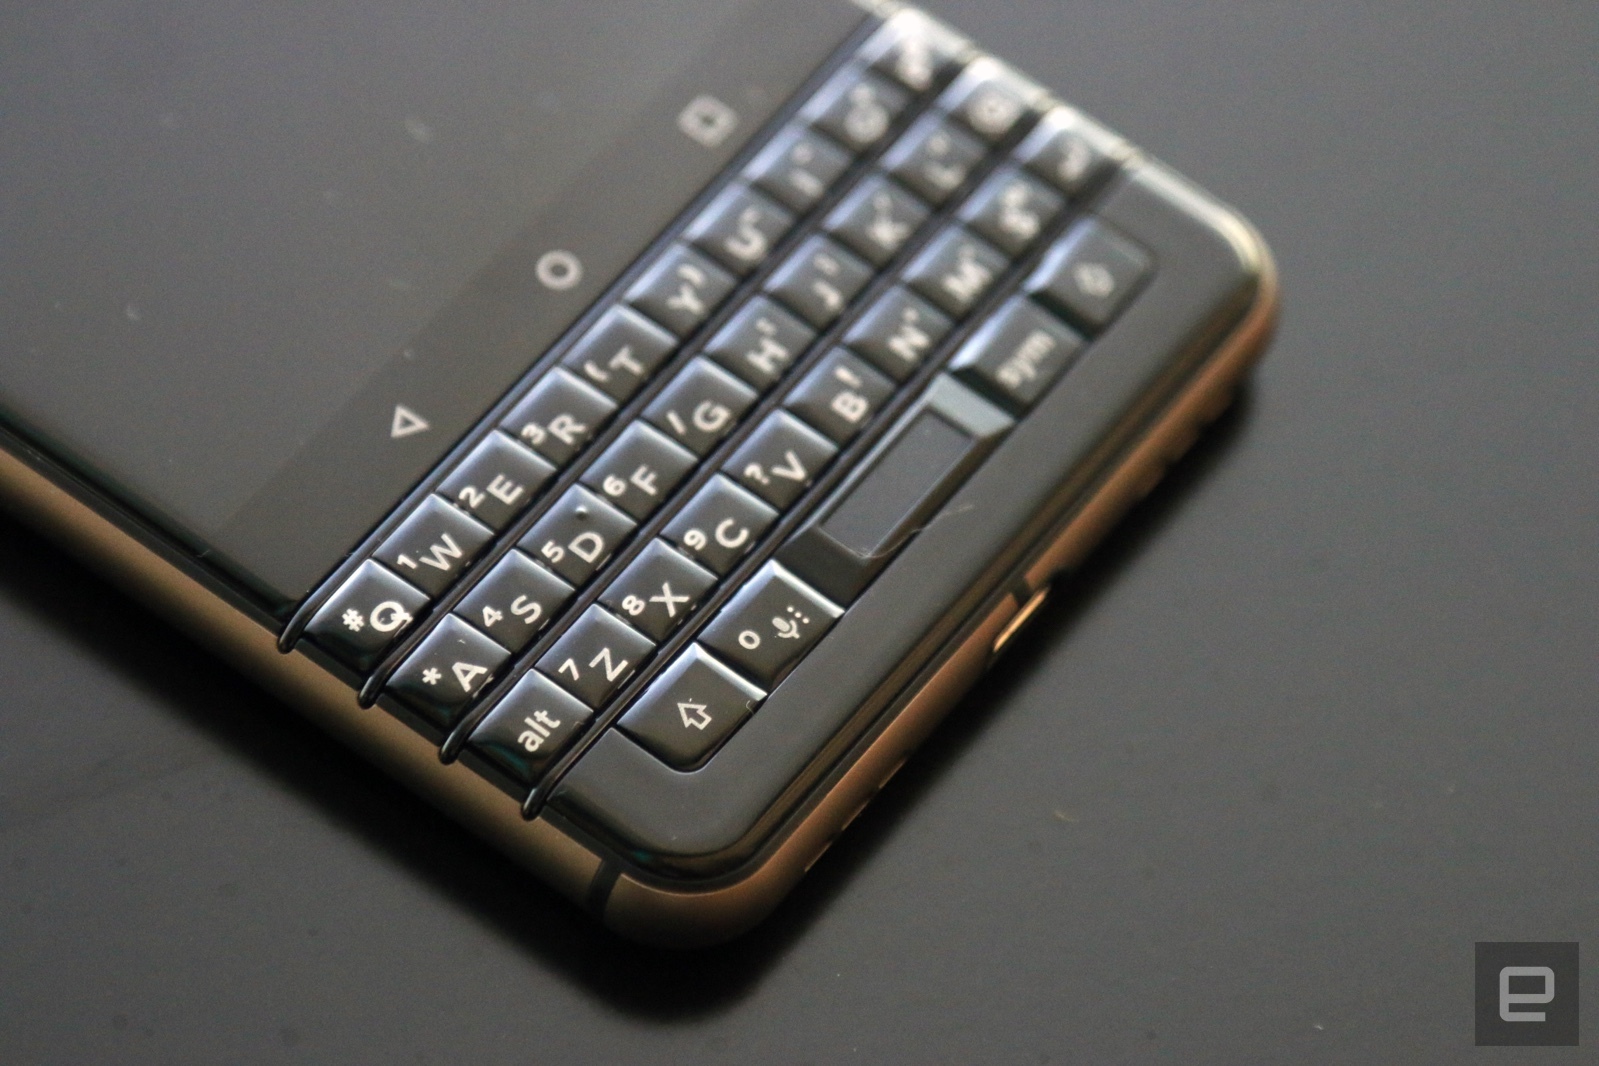 CES 2018: Cận cảnh
BlackBerry KEYone phiên bản màu đồng Bronze Edition, bỏ thẻ
microSD, có Dual SIM